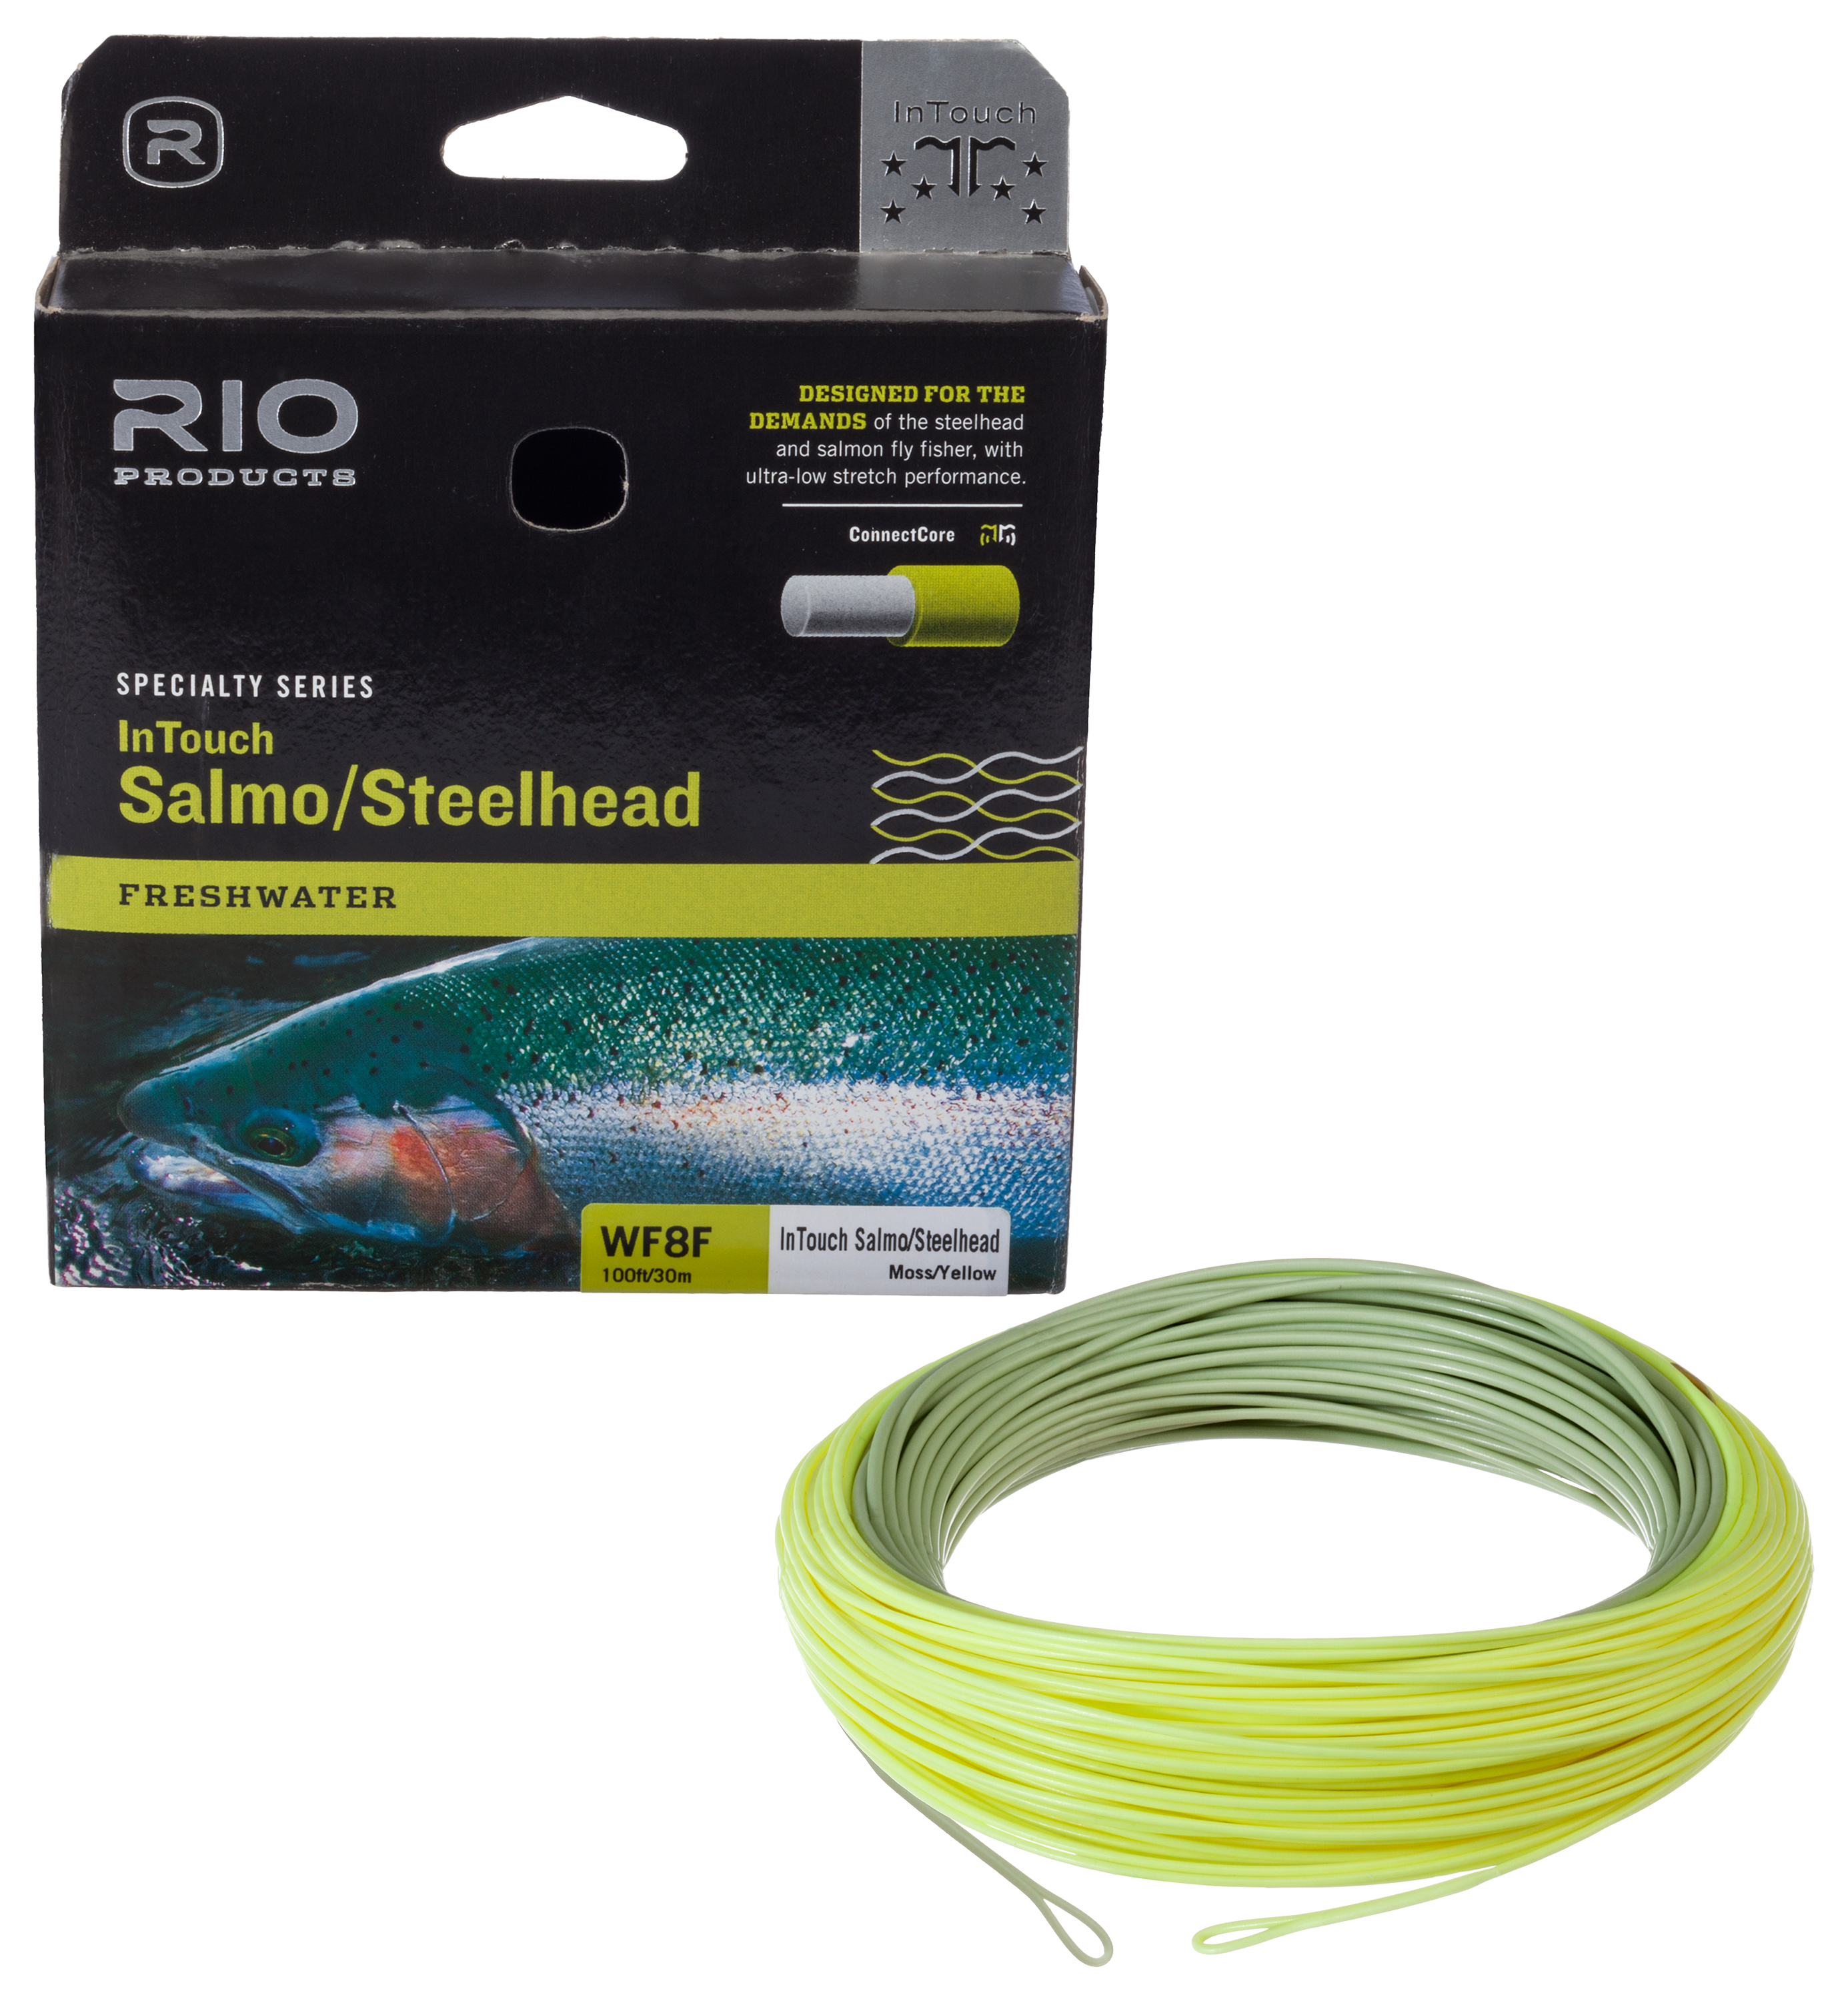 Rio InTouch Salmon/Steelhead Fly Line